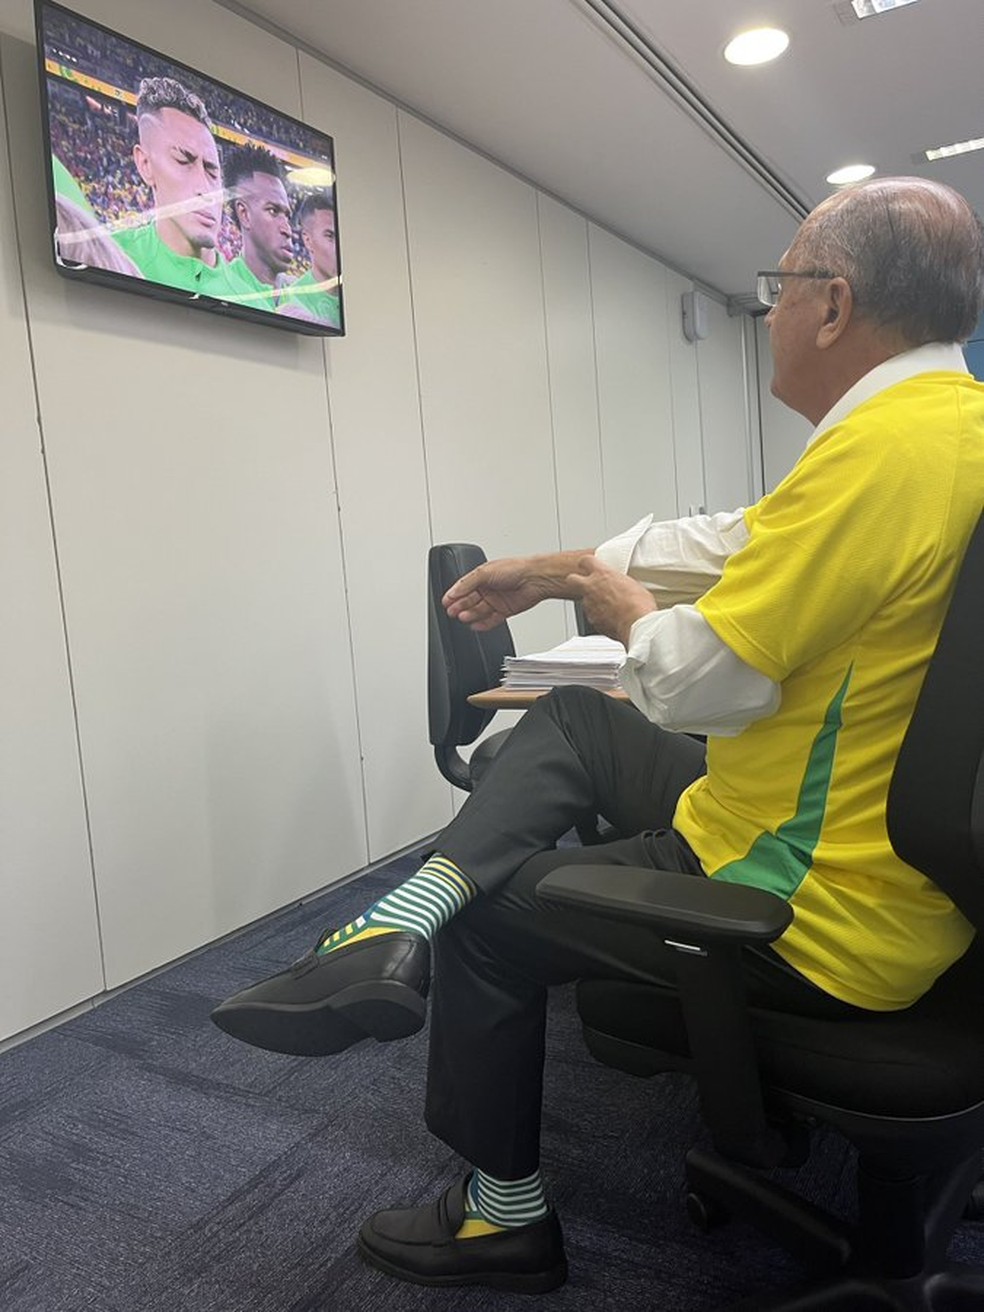 O vice-presidente eleito, Geraldo Alckmin, viu o jogo da seleção na sede da transição, em Brasília — Foto: Reprodução